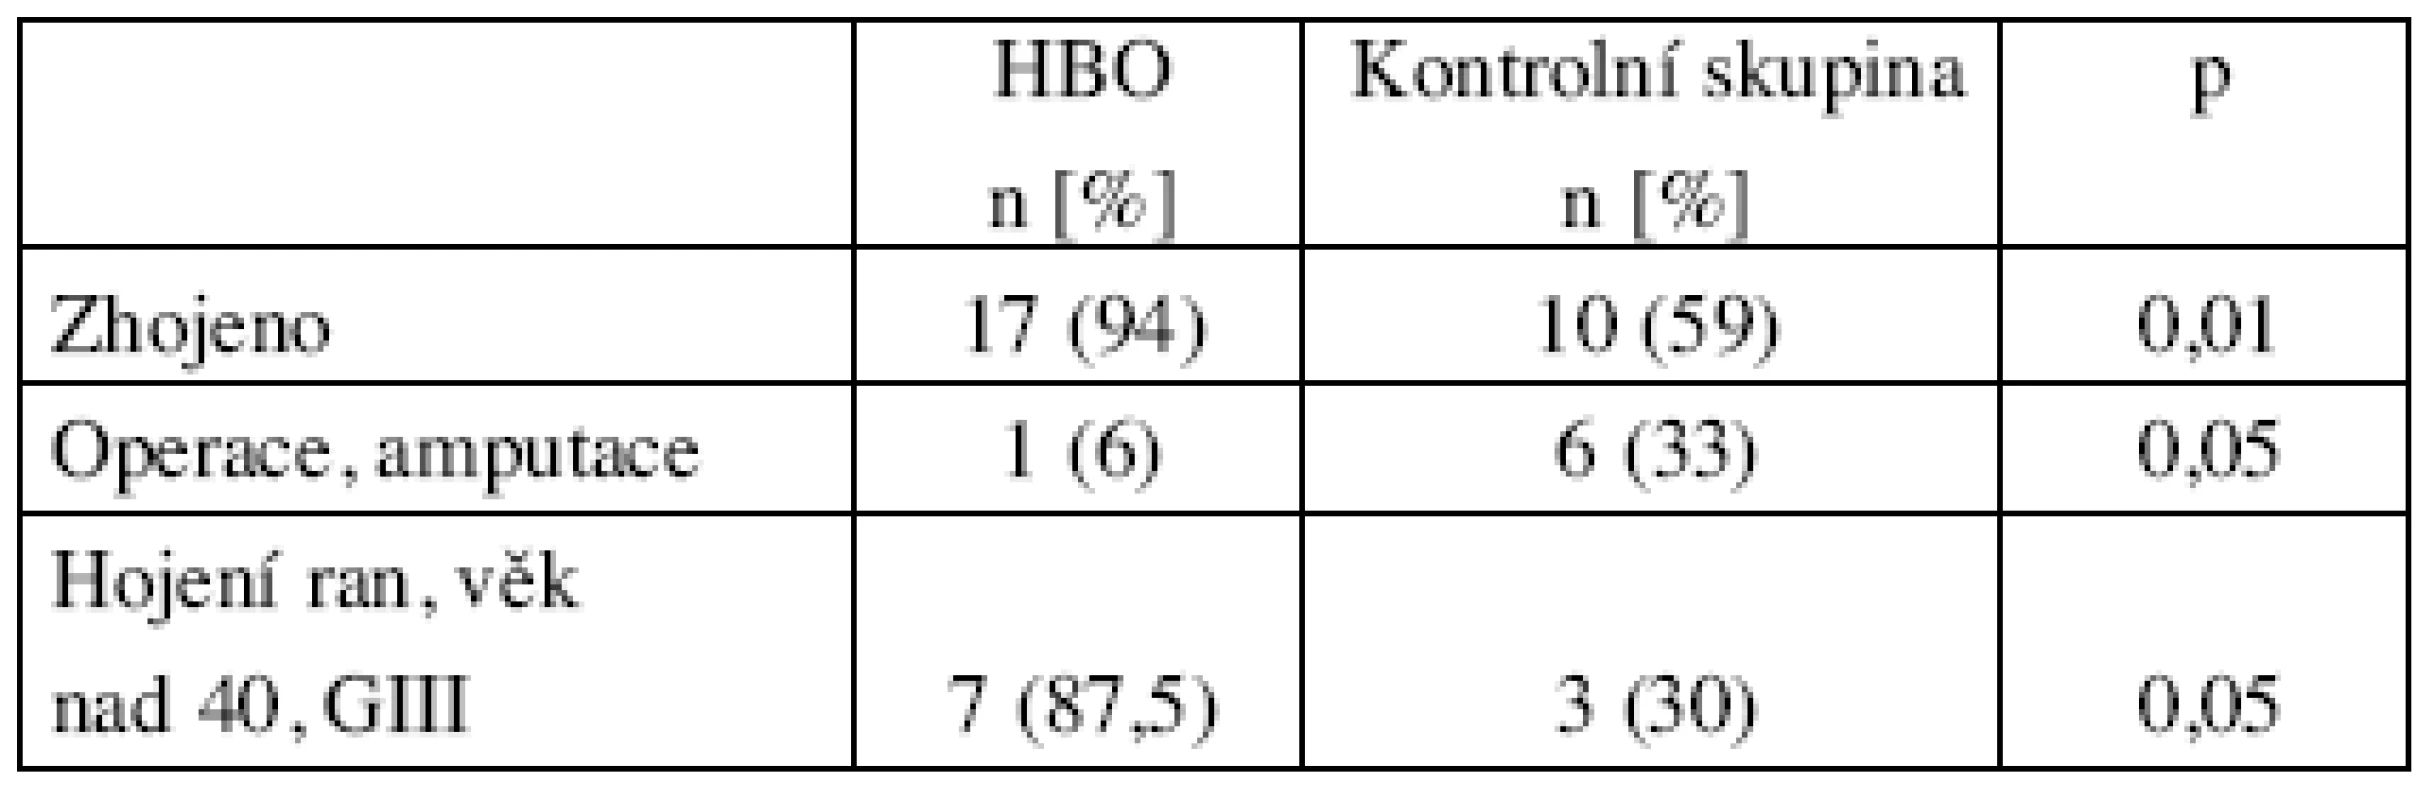 Efekt HBO ve srovnání s kontrolní skupinou – signifikantní rozdíl v počtu zhojených, redukcí operací a zlepšením hojení ran u pacientů nad 40 let věku 